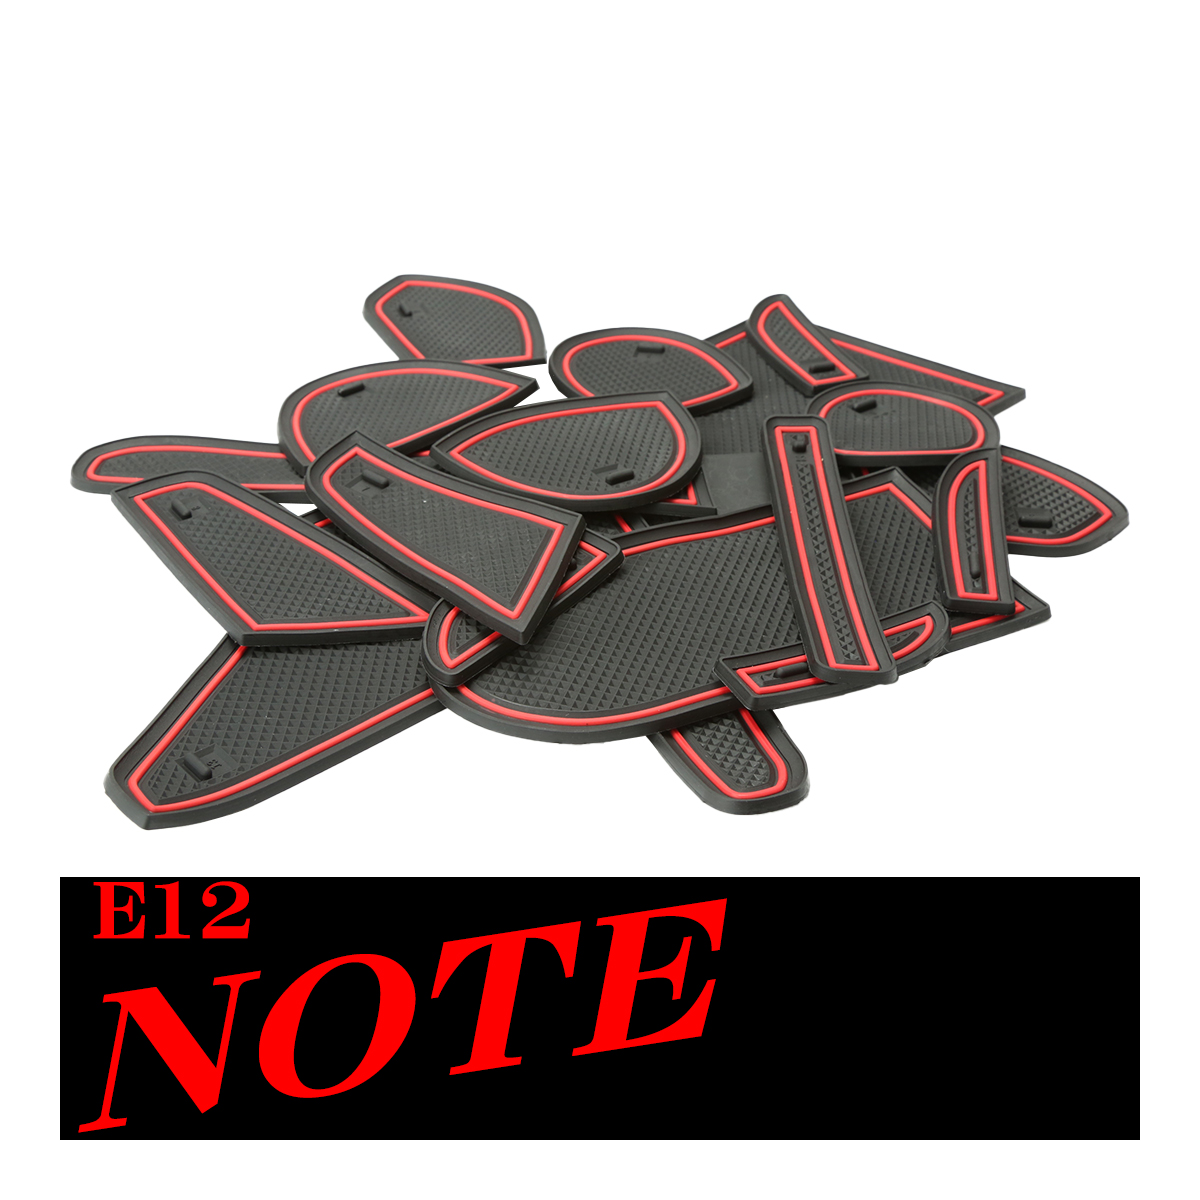 E12 ノート ポケットマット S-378